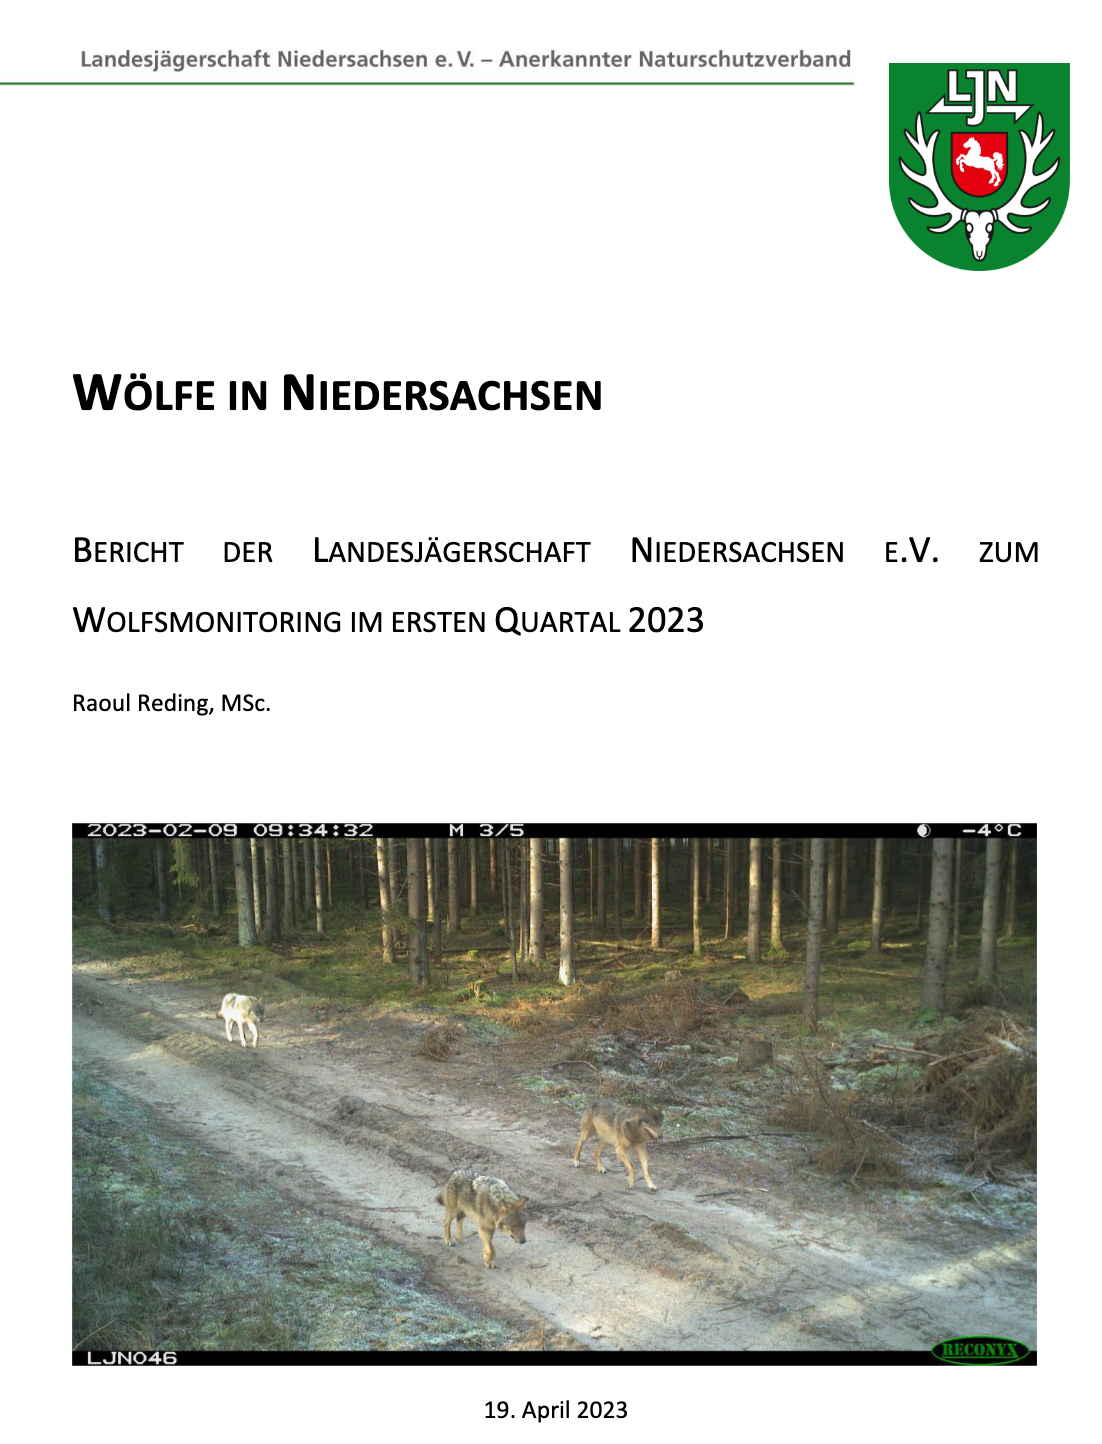 Wolfsmonitoring Niedersachsen I/2023